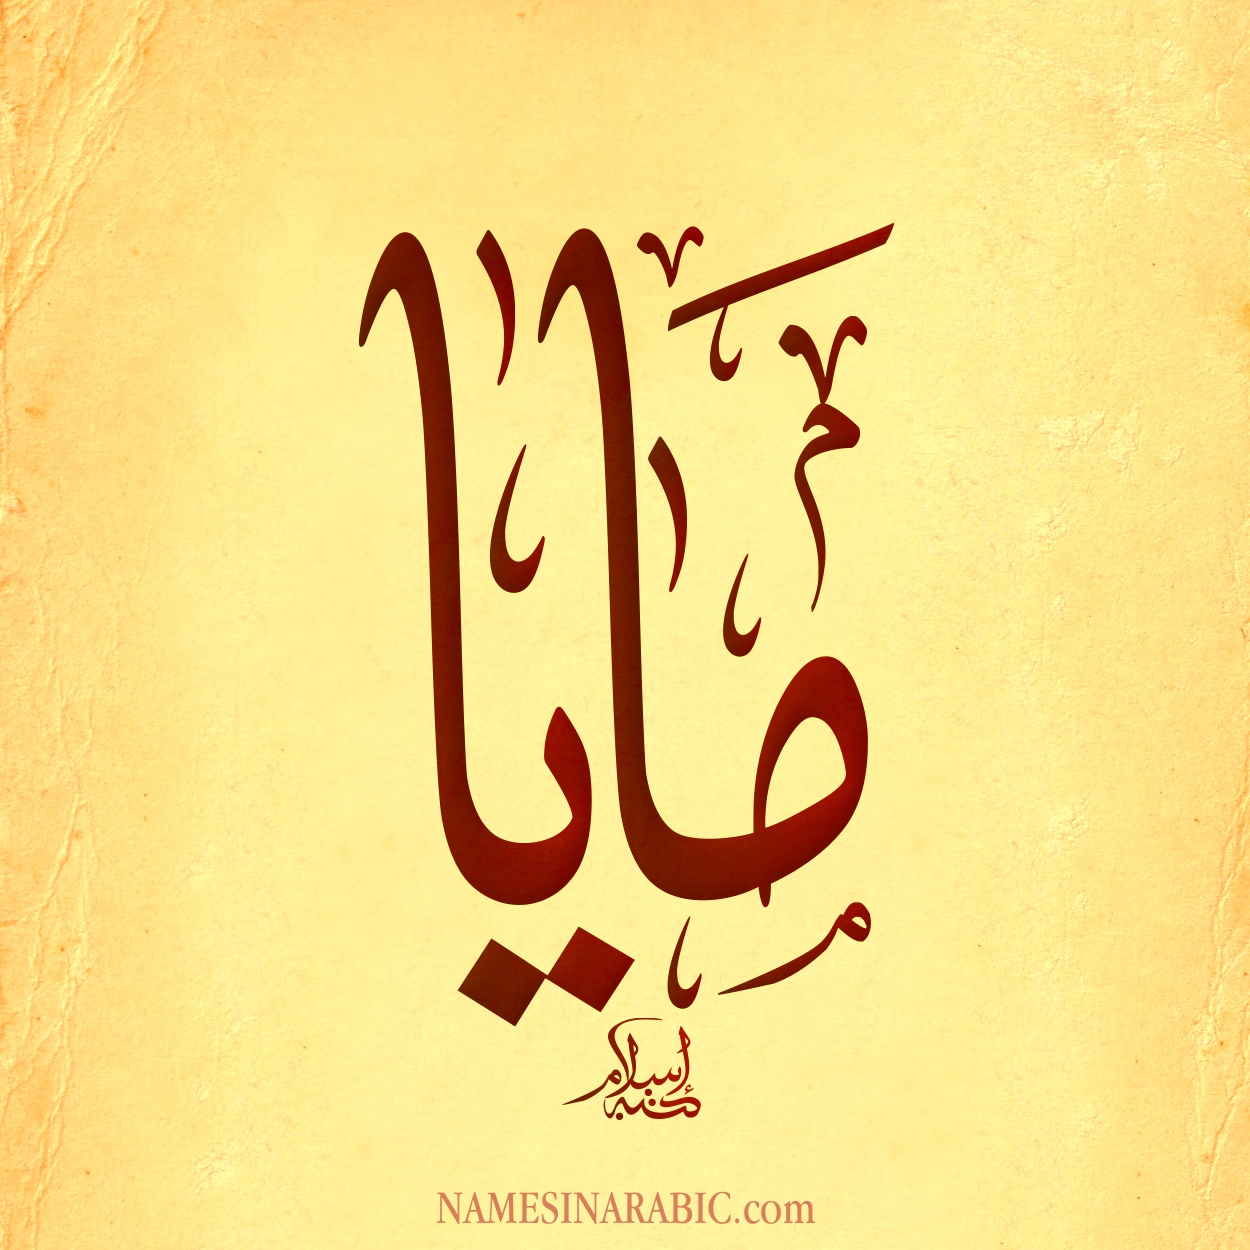 Maya-Name-in-Arabic-Calligraphy.jpg